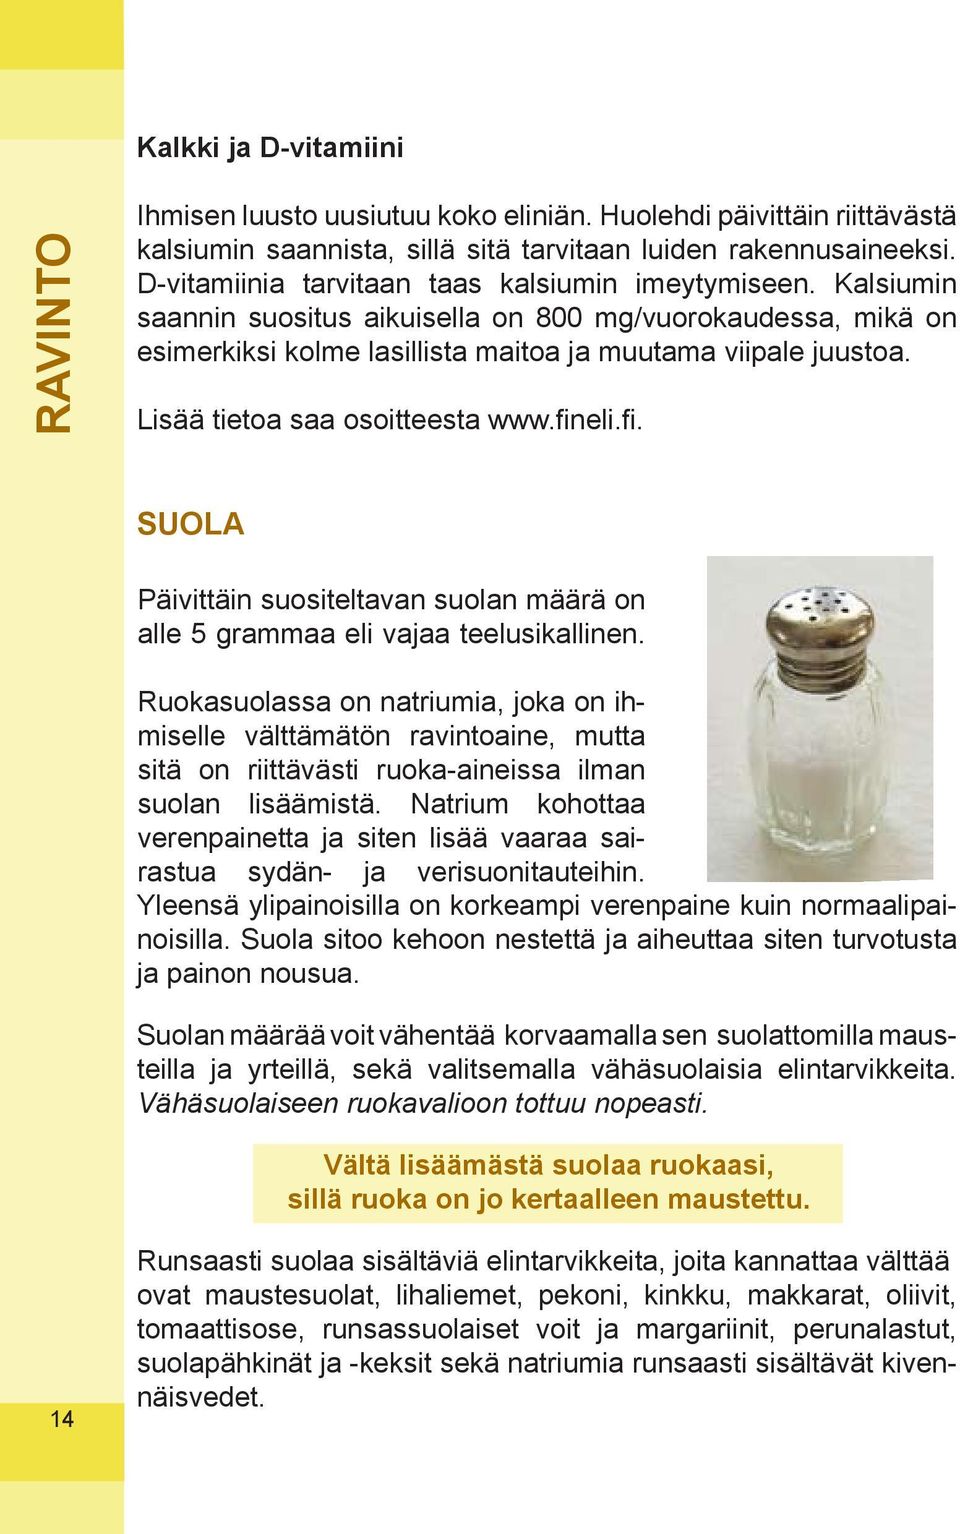 Lisää tietoa saa osoitteesta www.fineli.fi. SUOLA Päivittäin suositeltavan suolan määrä on alle 5 grammaa eli vajaa teelusikallinen.